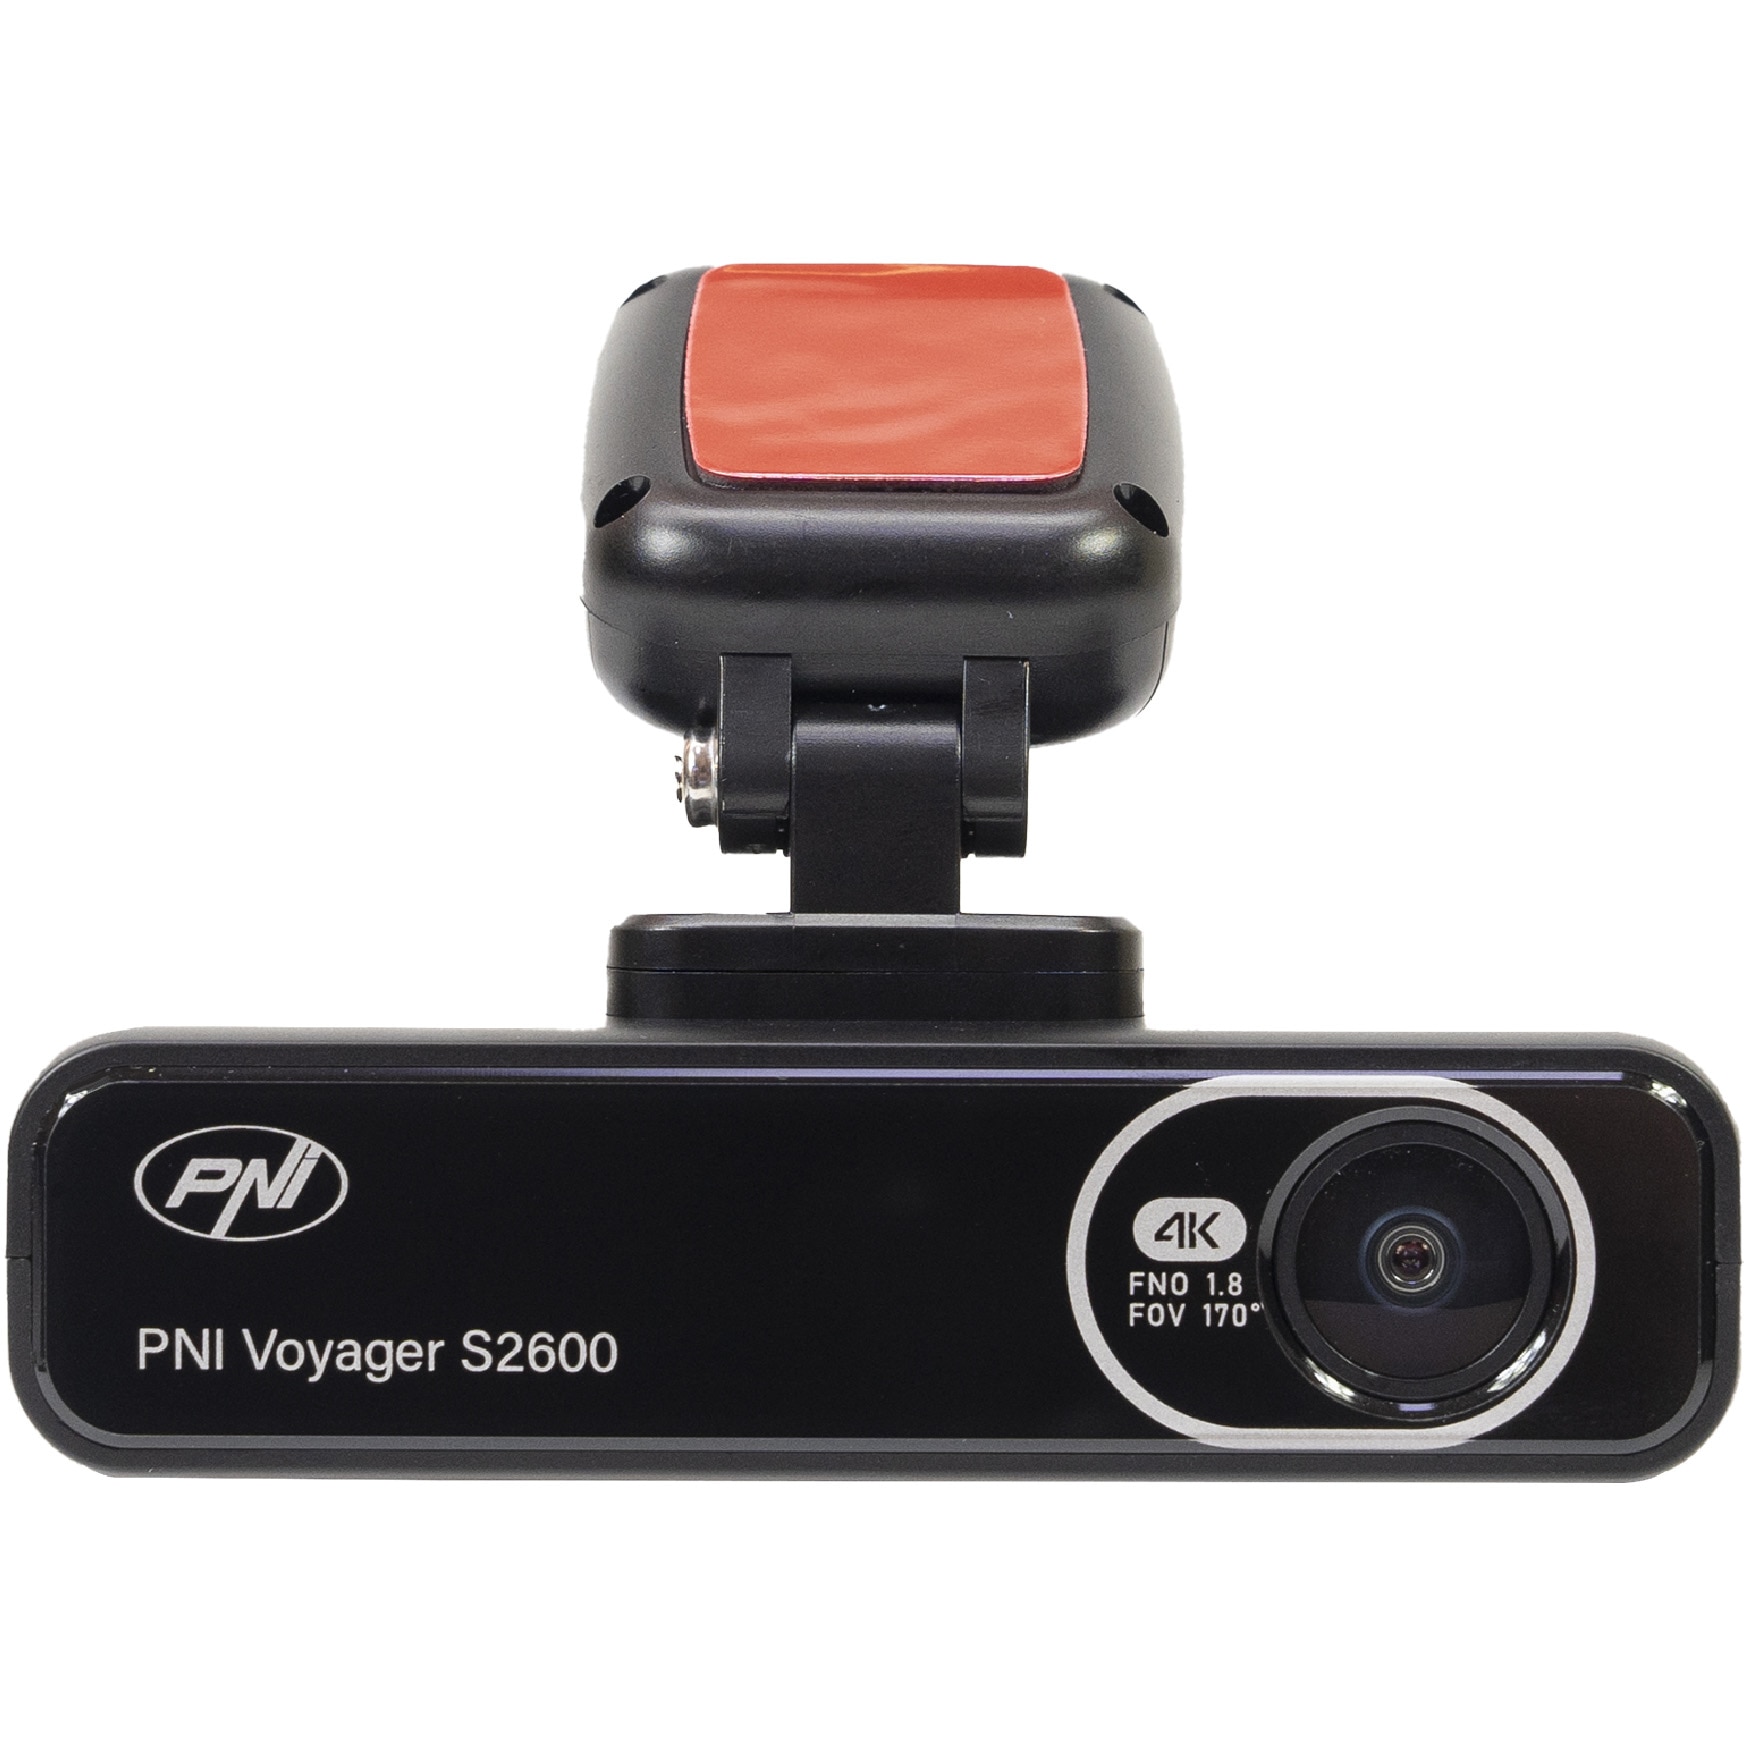 Fotografie Camera auto DVR PNI Voyager S2600 WiFi 4K Ultra HD, fara display, functie Monitorizare parcare, G-sensor, inregistrare video si audio, alimentare 12V/24V